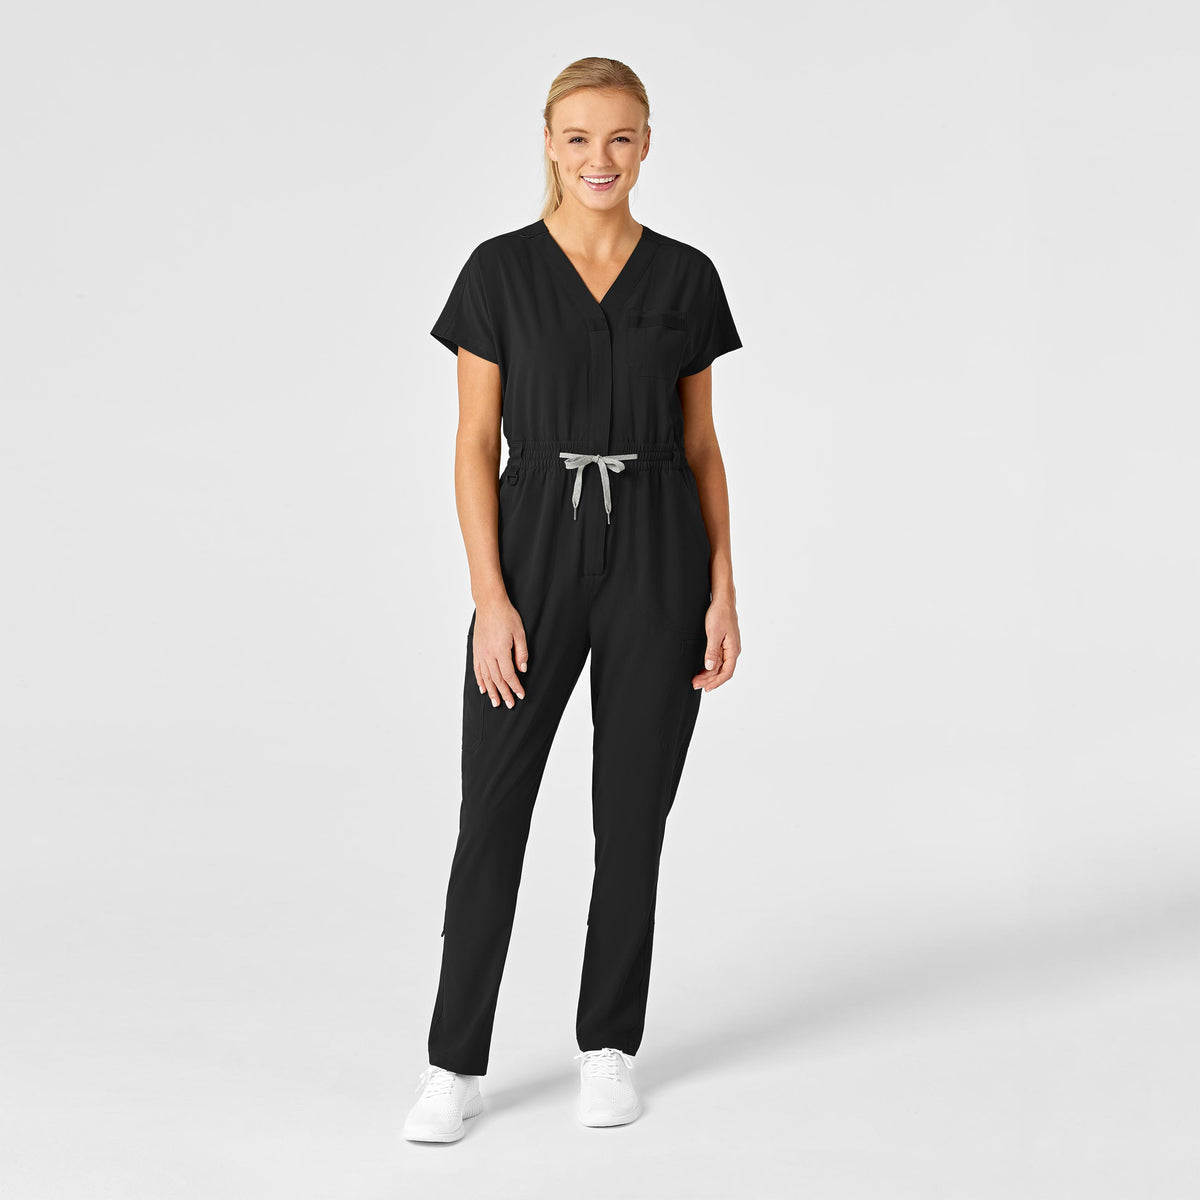 Women's Modern Fit Nursing Scrub Pant Sizes 2XL & 3XL Special